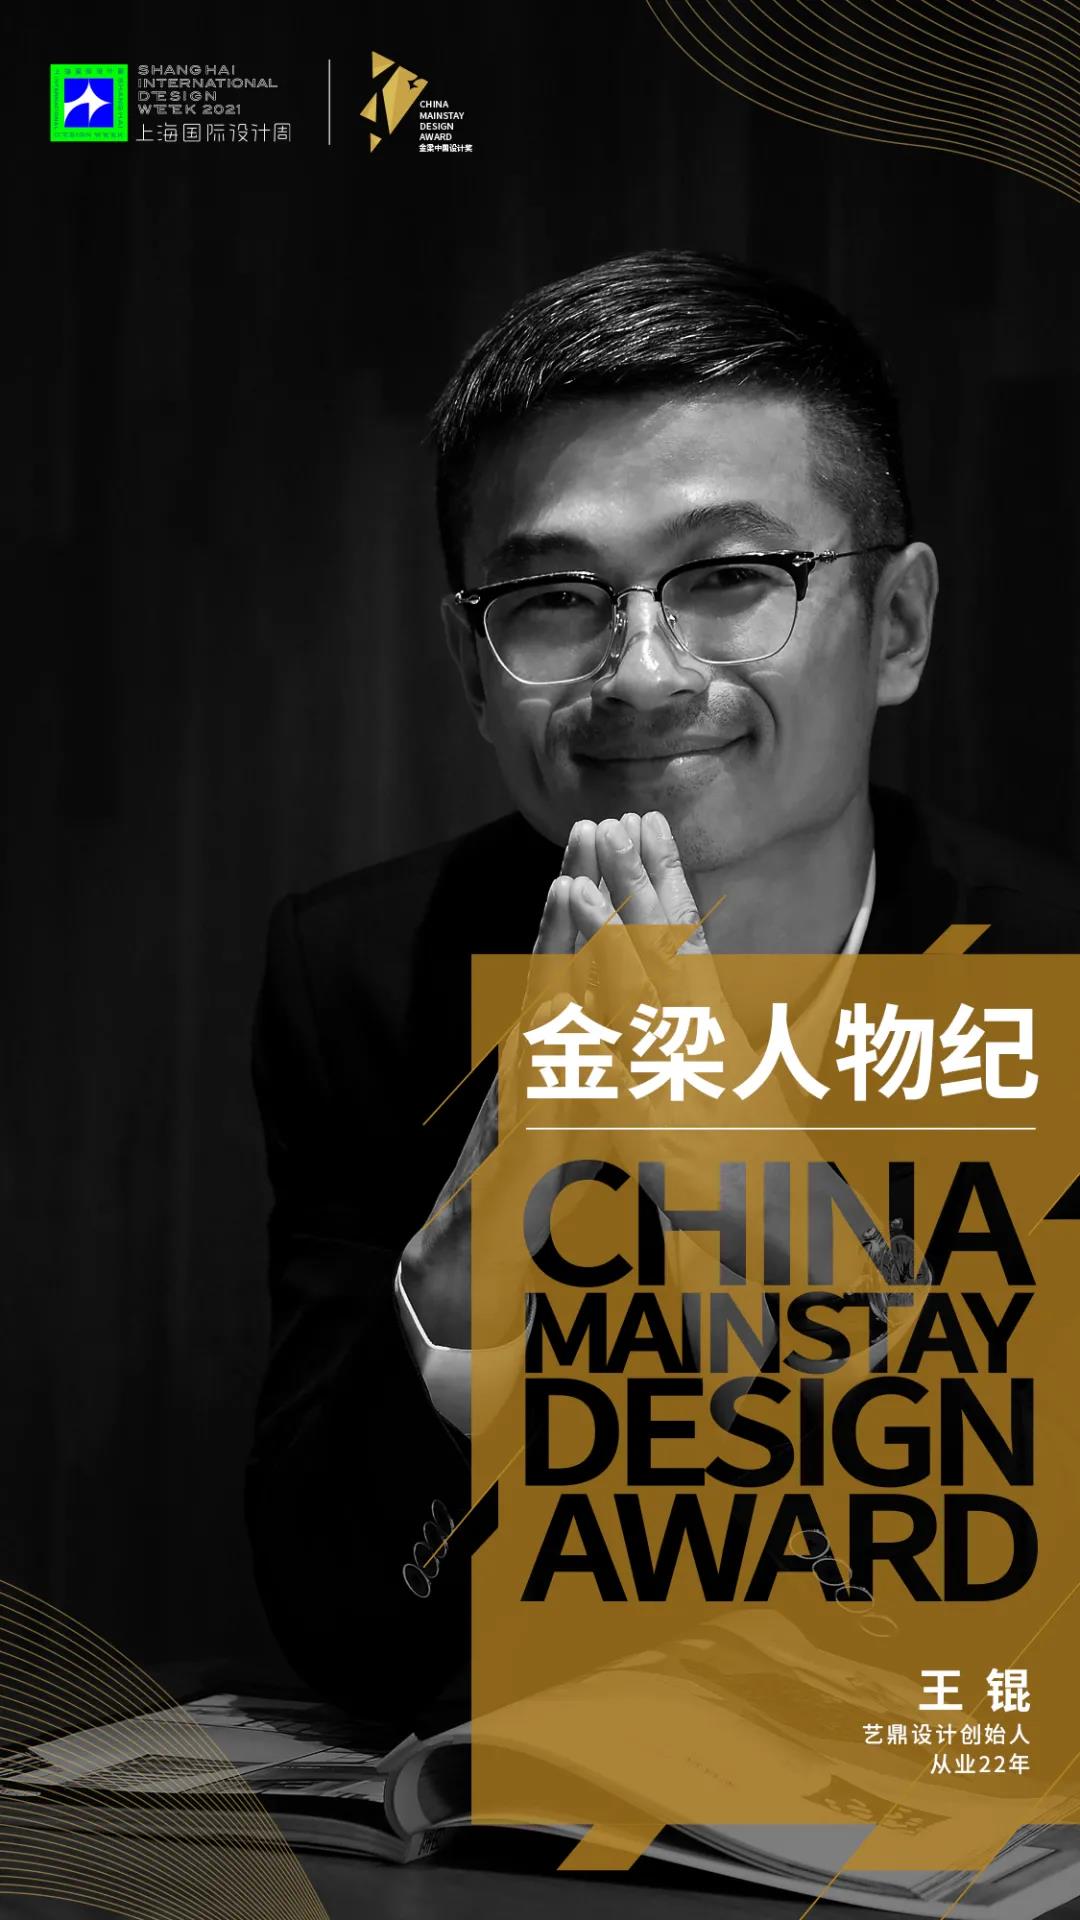 设计创造美好生活，上海国际设计周“金梁人物纪”专访